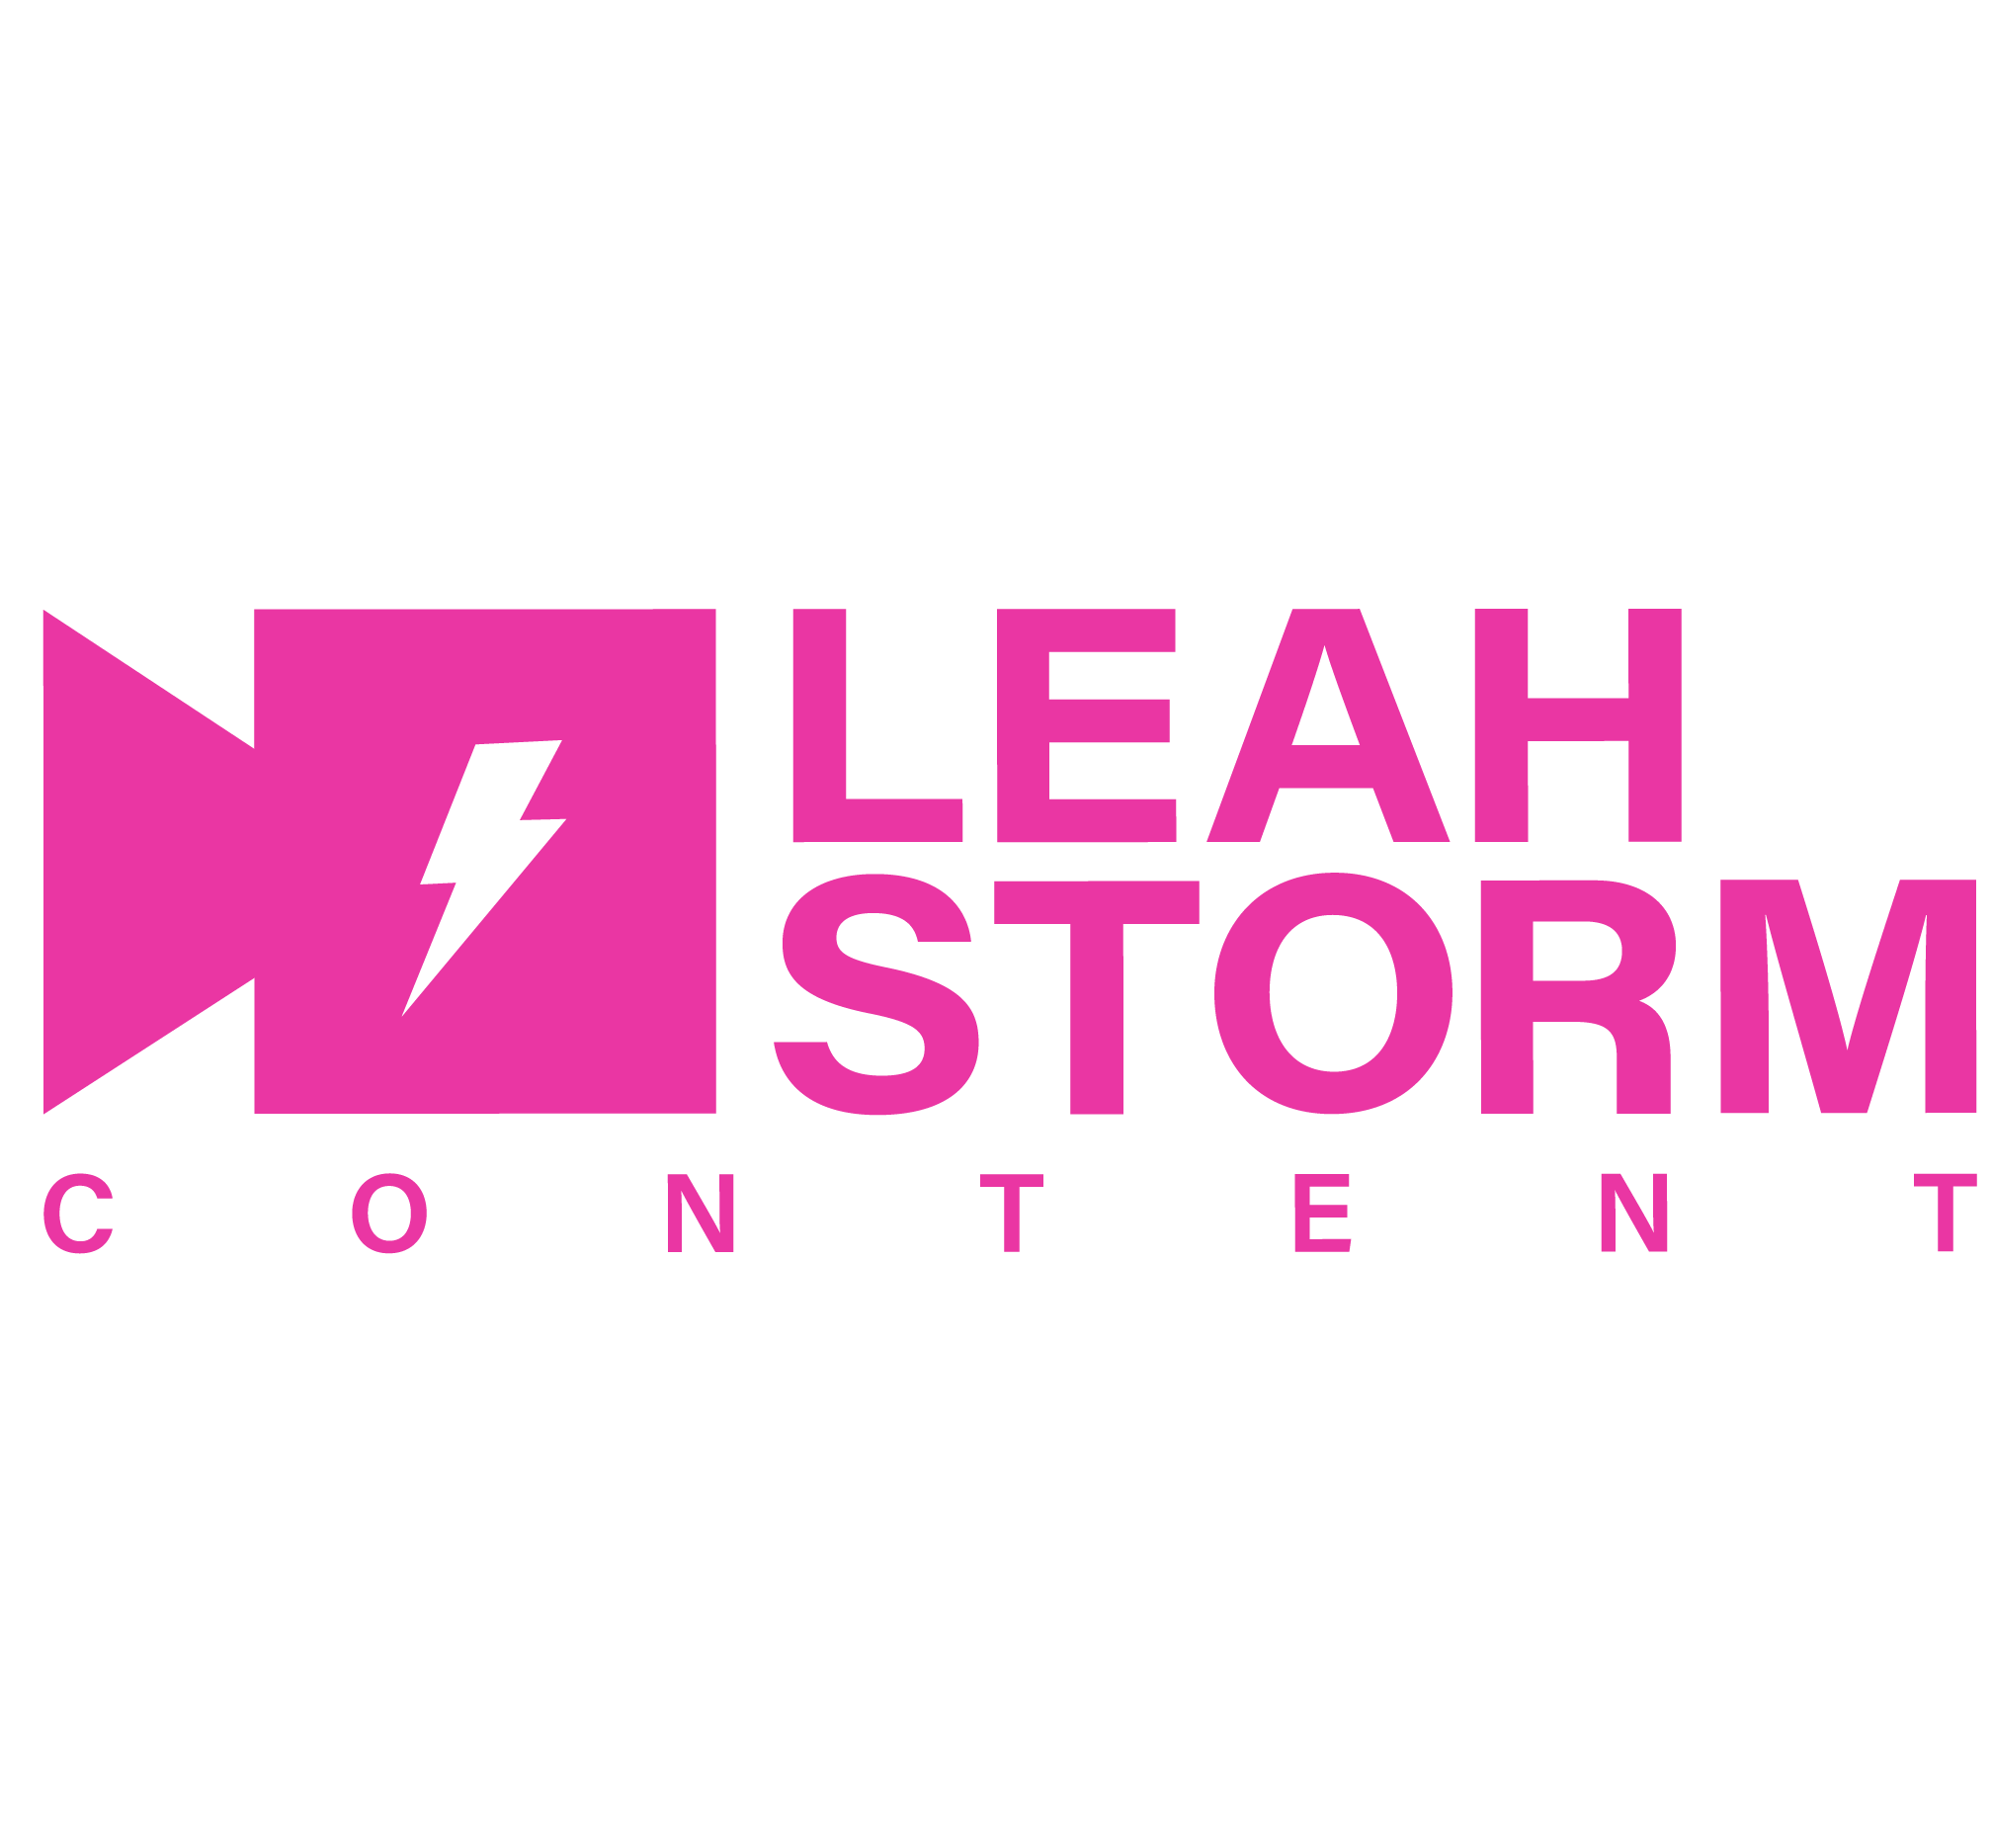 Leah Storm content